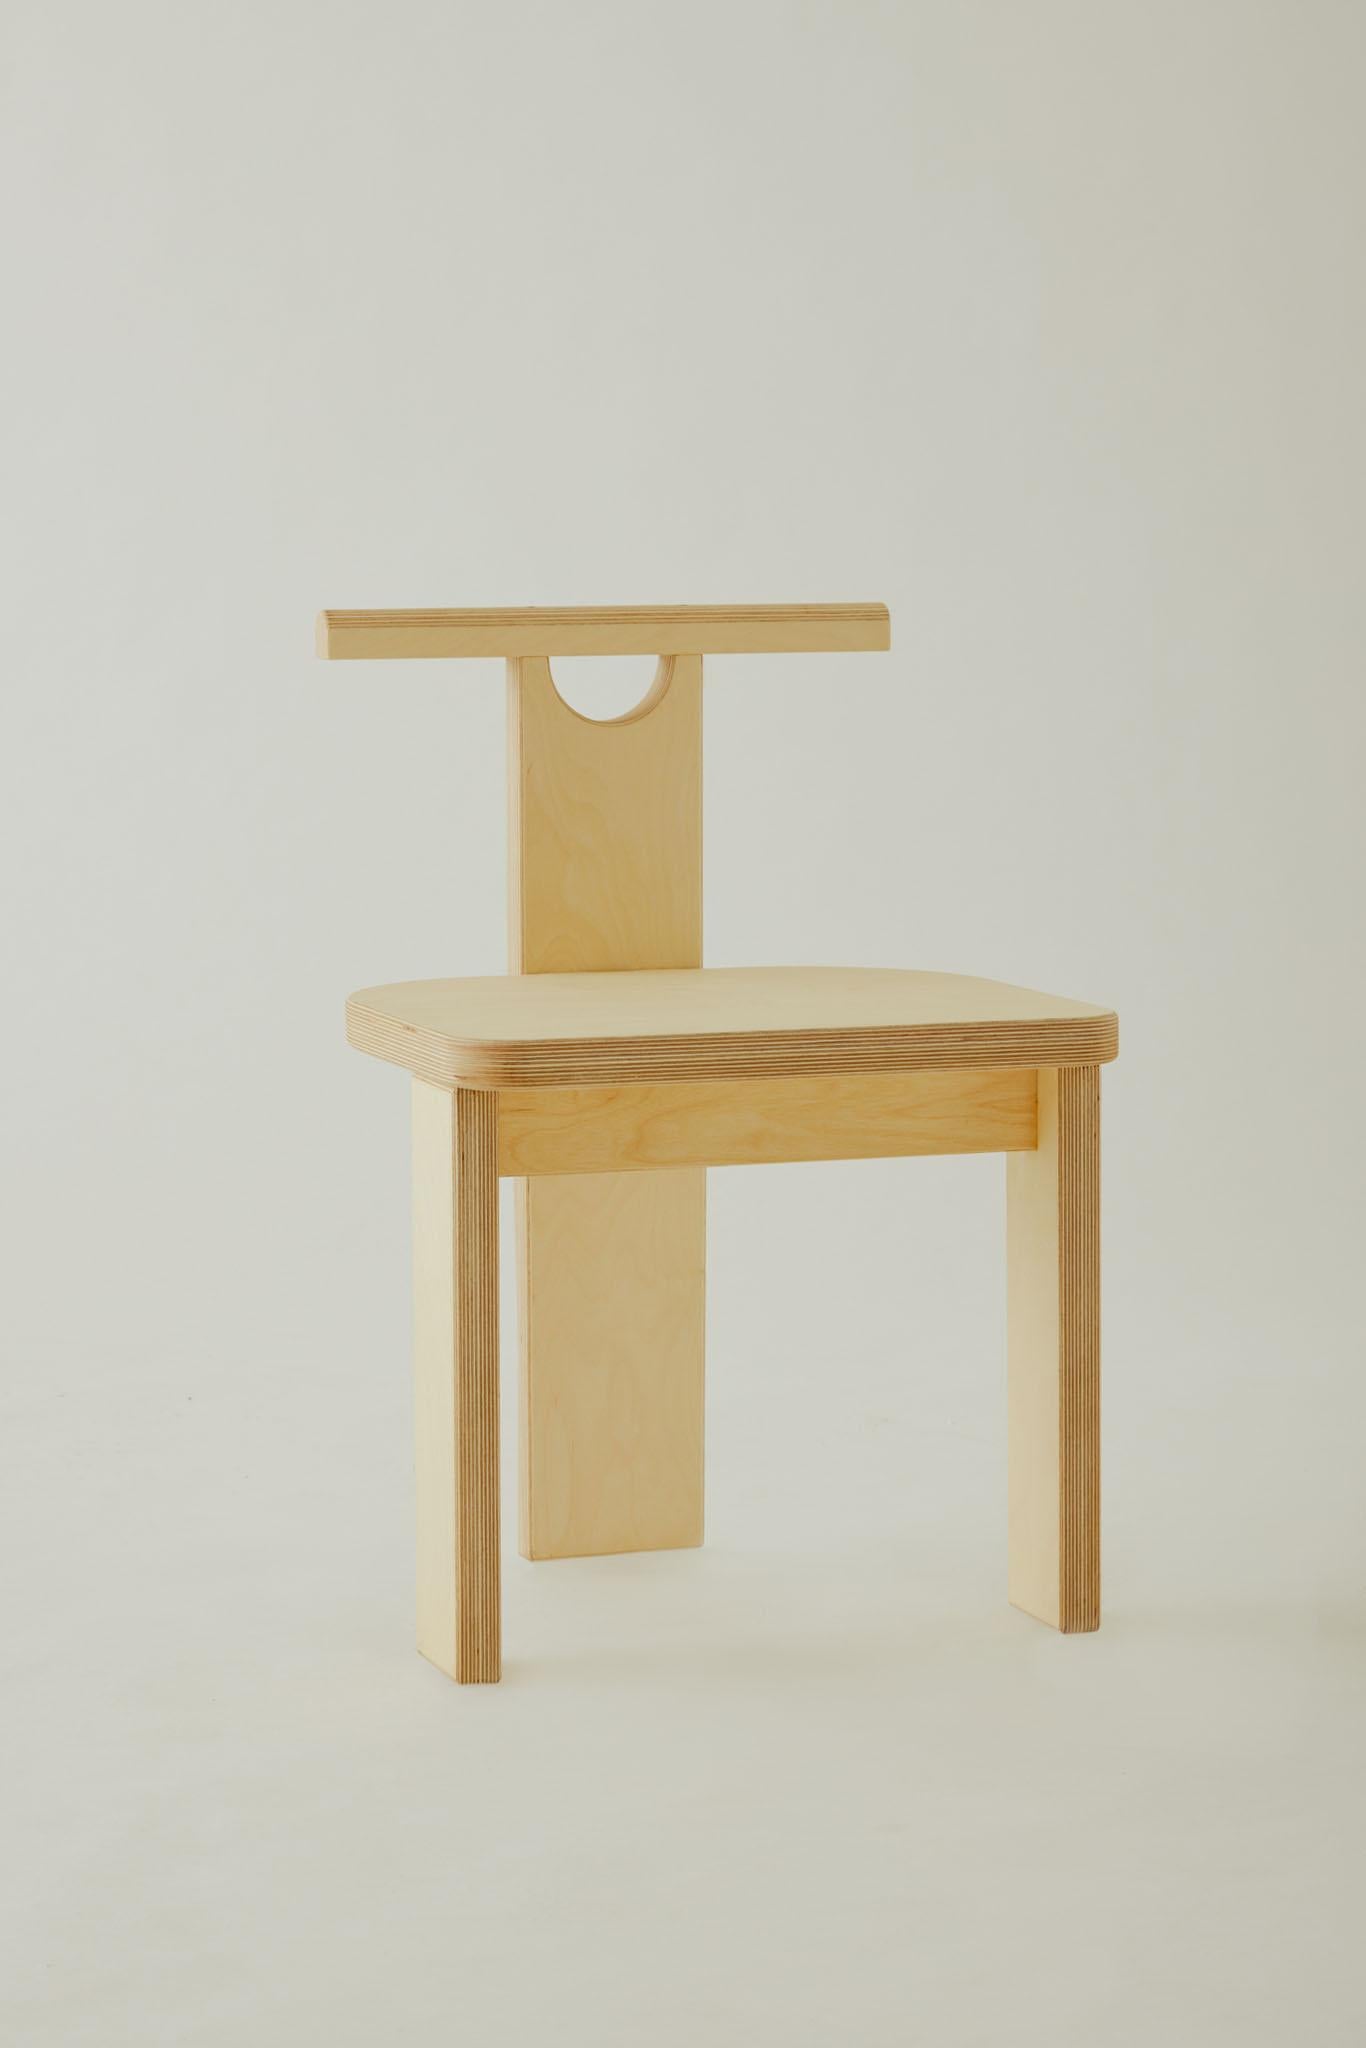 Silhouette ciselée et forte, la chaise Lucid est l'expression lucide de la simplicité. Inspirée dans sa forme par la joie qui accompagne les jeux de construction, cette chaise apporte une nostalgie enfantine à votre espace de travail. L'ouverture en